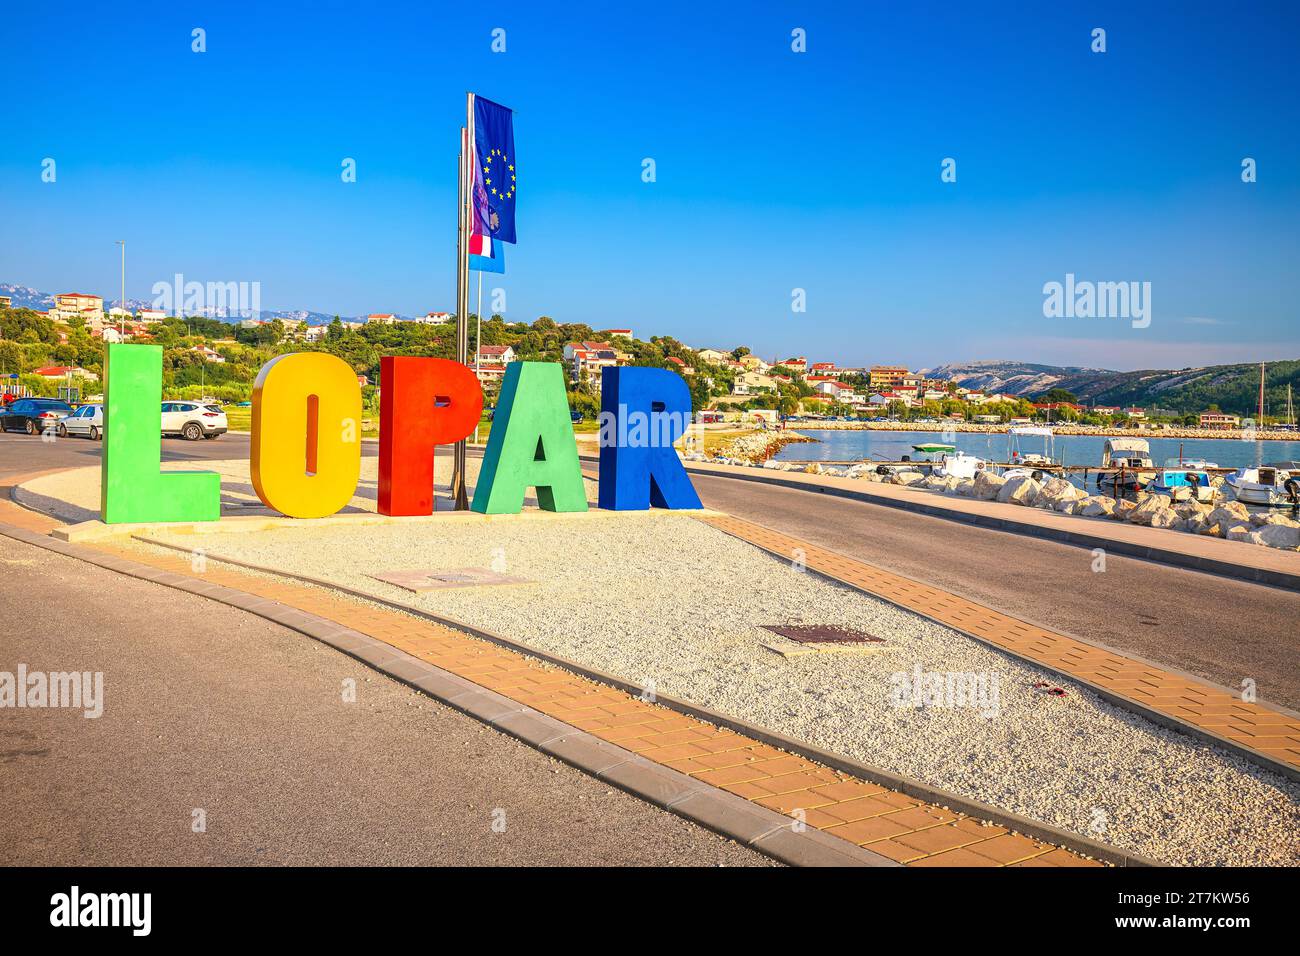 Città di Lopar sull'insegna dell'isola di Rab e vista sul lungomare, arcipelago della Croazia Foto Stock